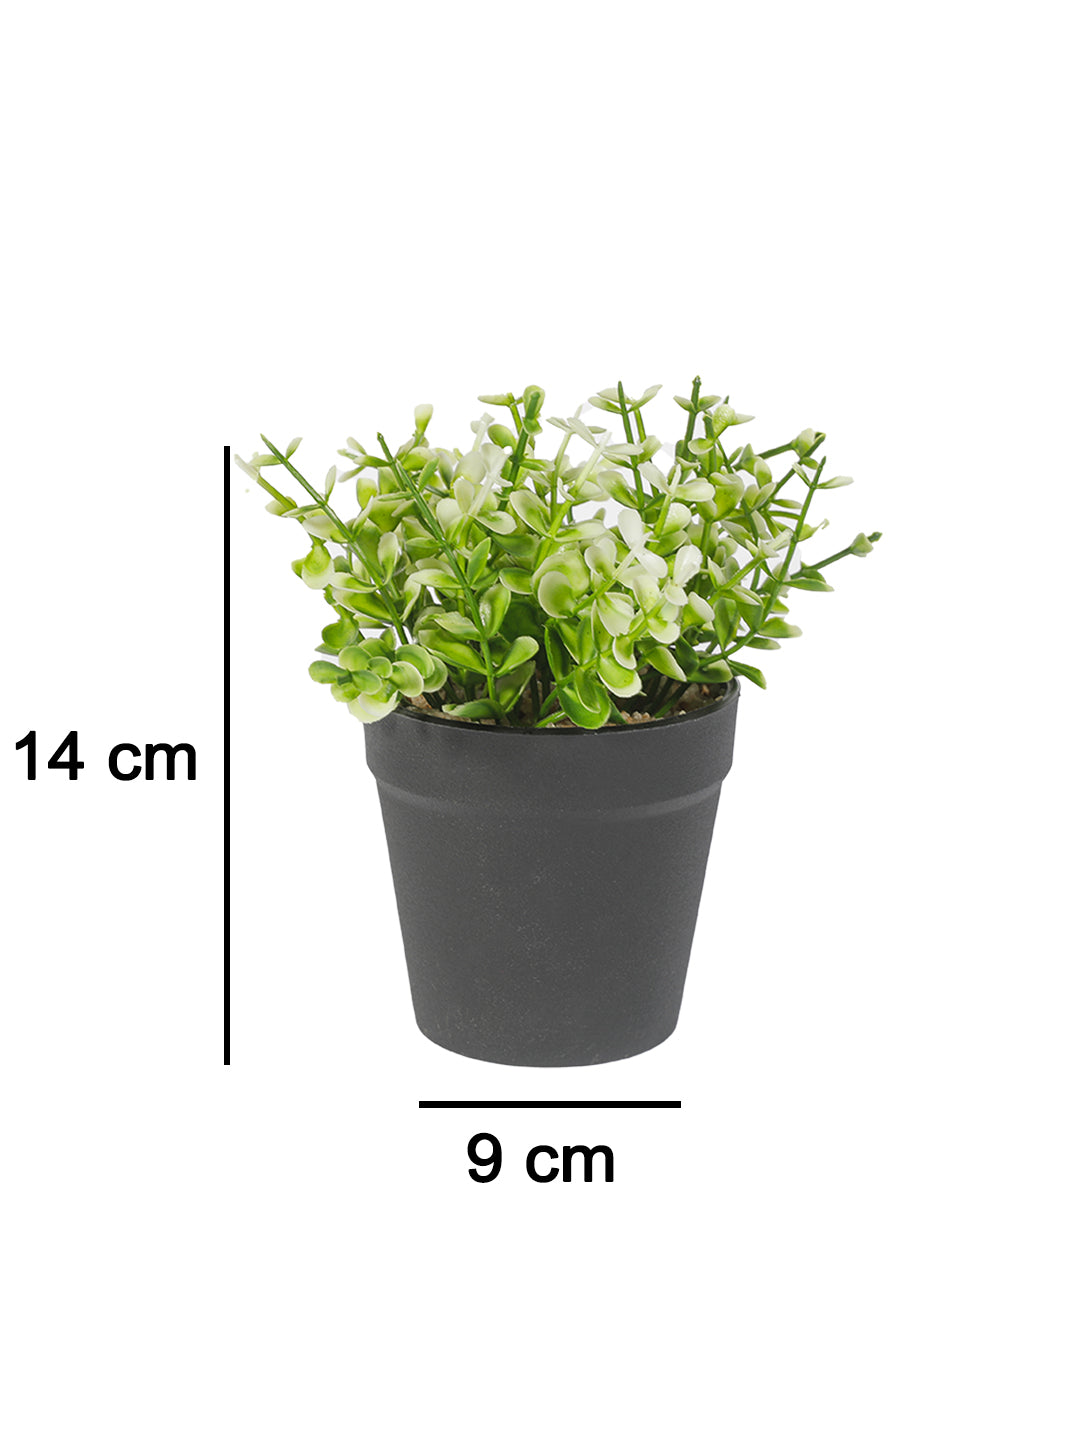 VON CASA Artificial White Flower Potted Plant - Black Pot